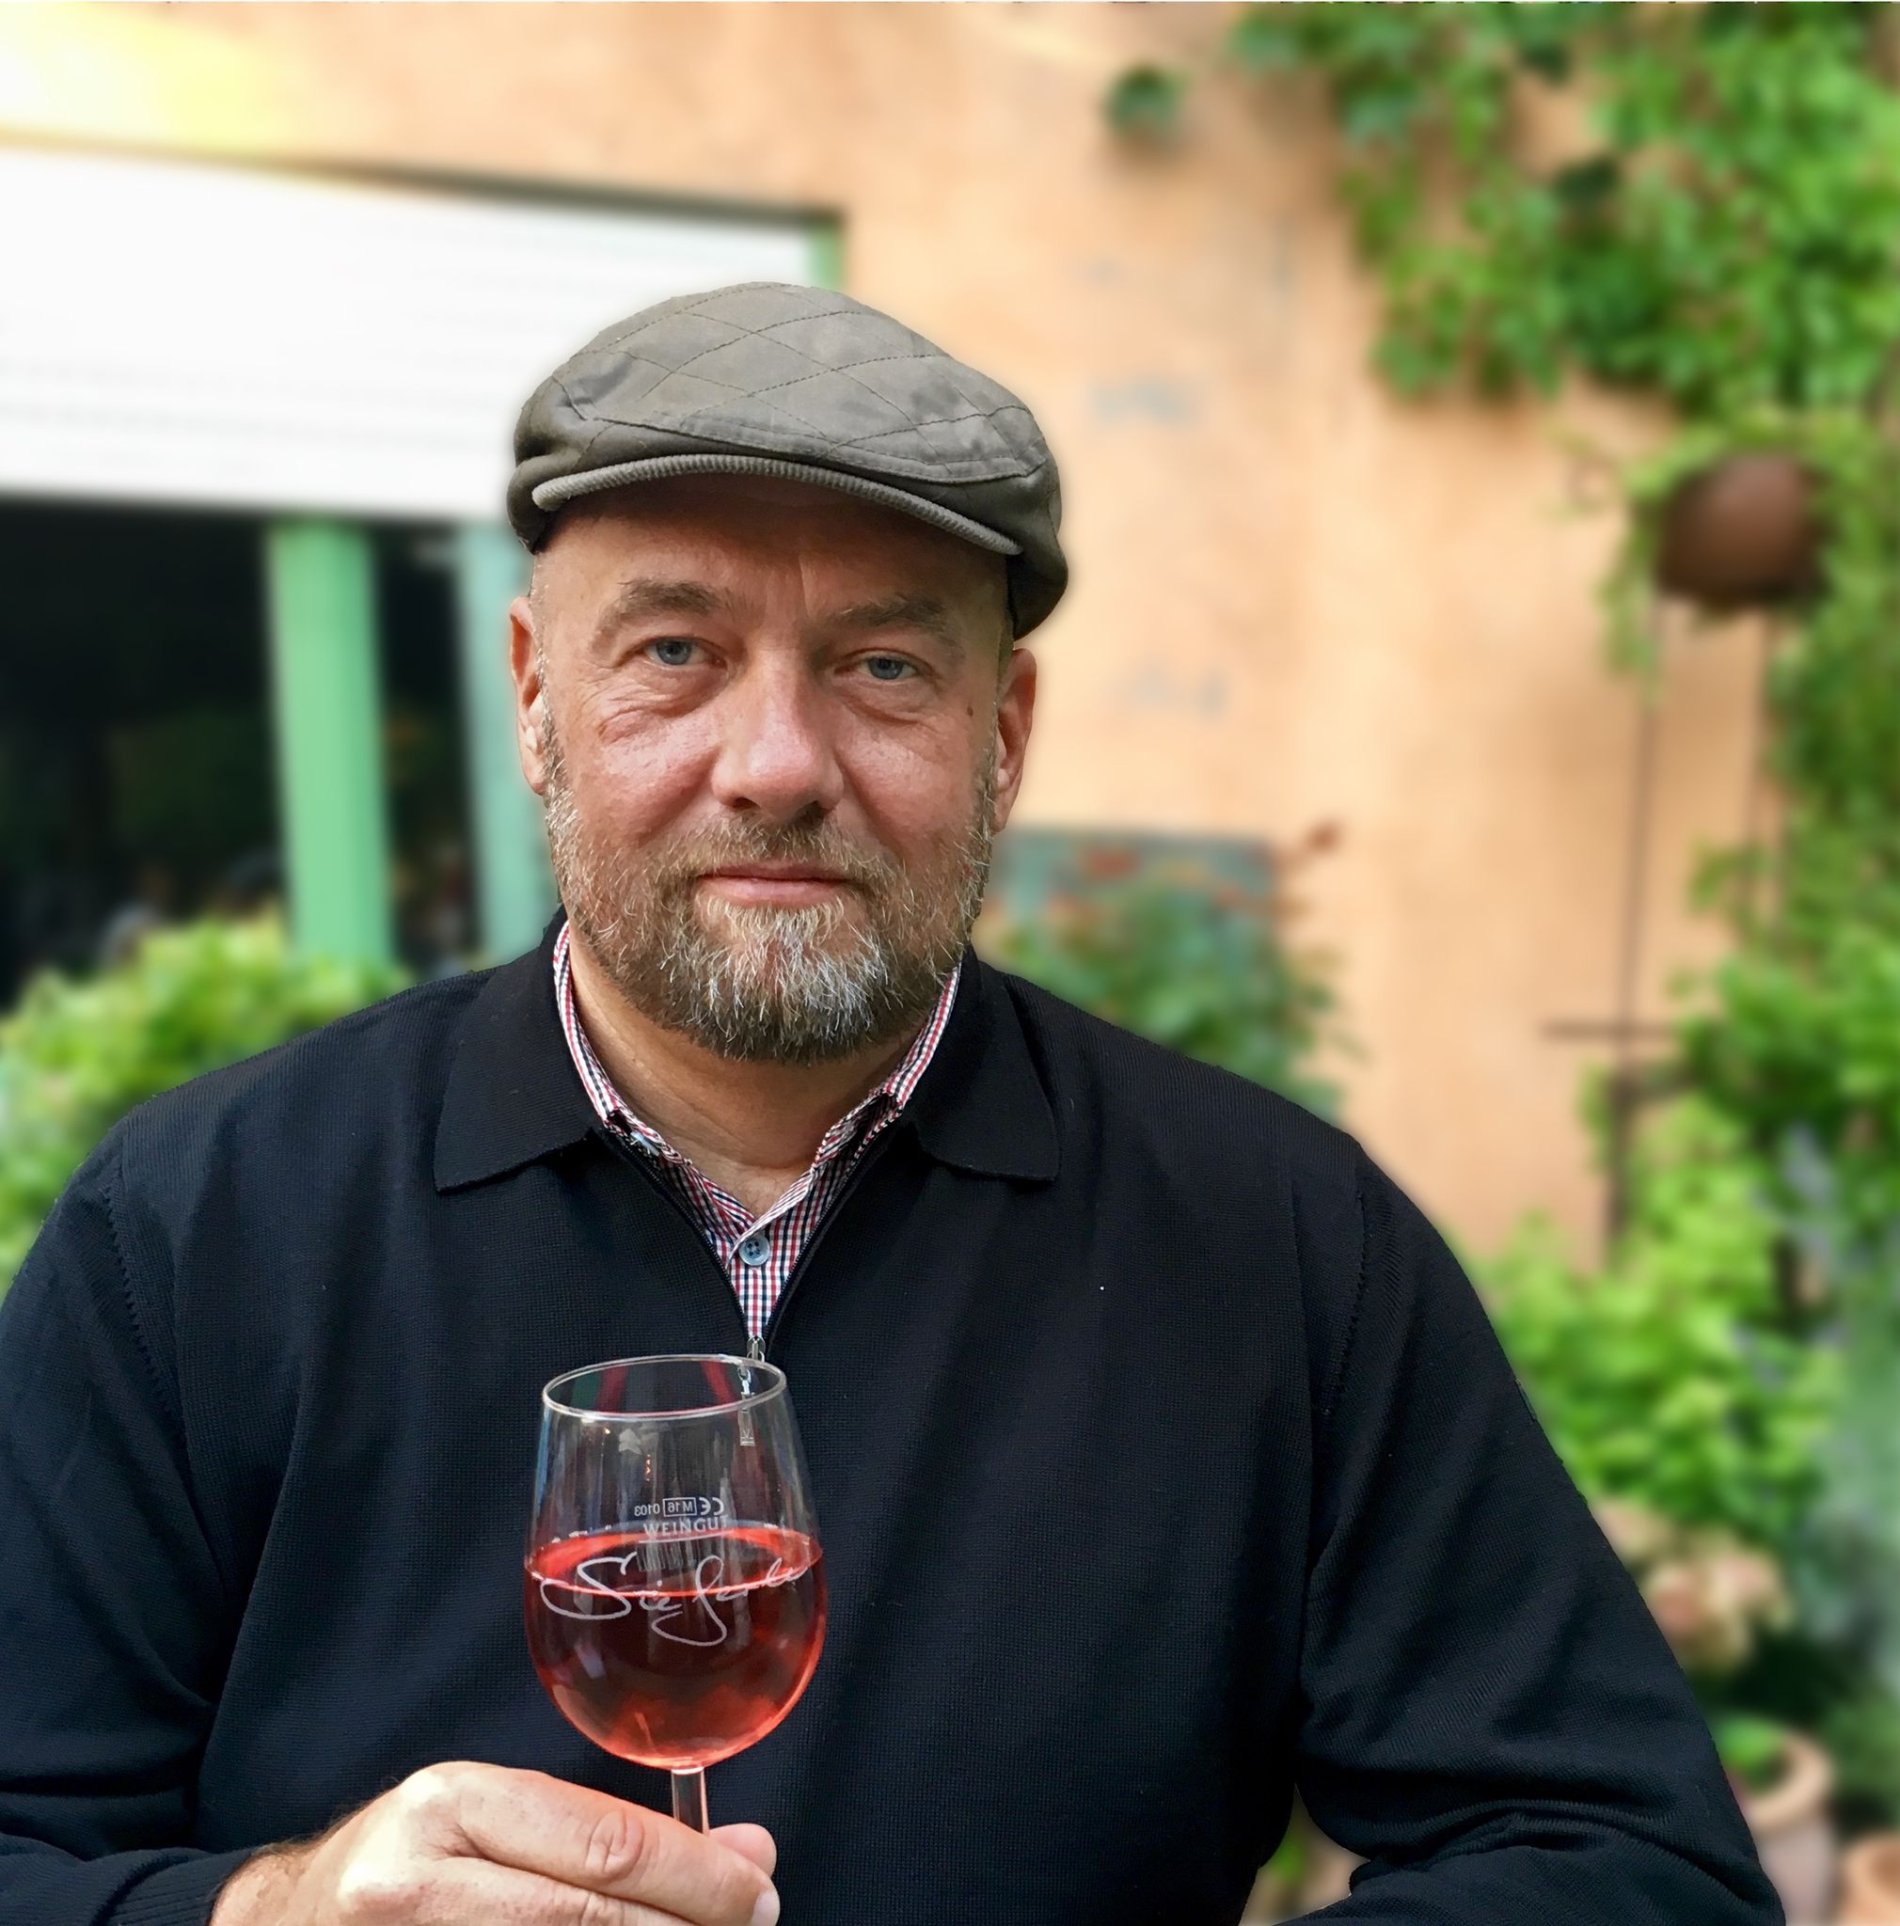 Torsten Sälinger, zertifizierter Wein-Guide für die Ortenau, stellt im Rahmen von Weinbaumuseum am Abend die Weinregion westlich des Schwarzwaldes, ausgewählte Winzer und Ihre Weine vor.